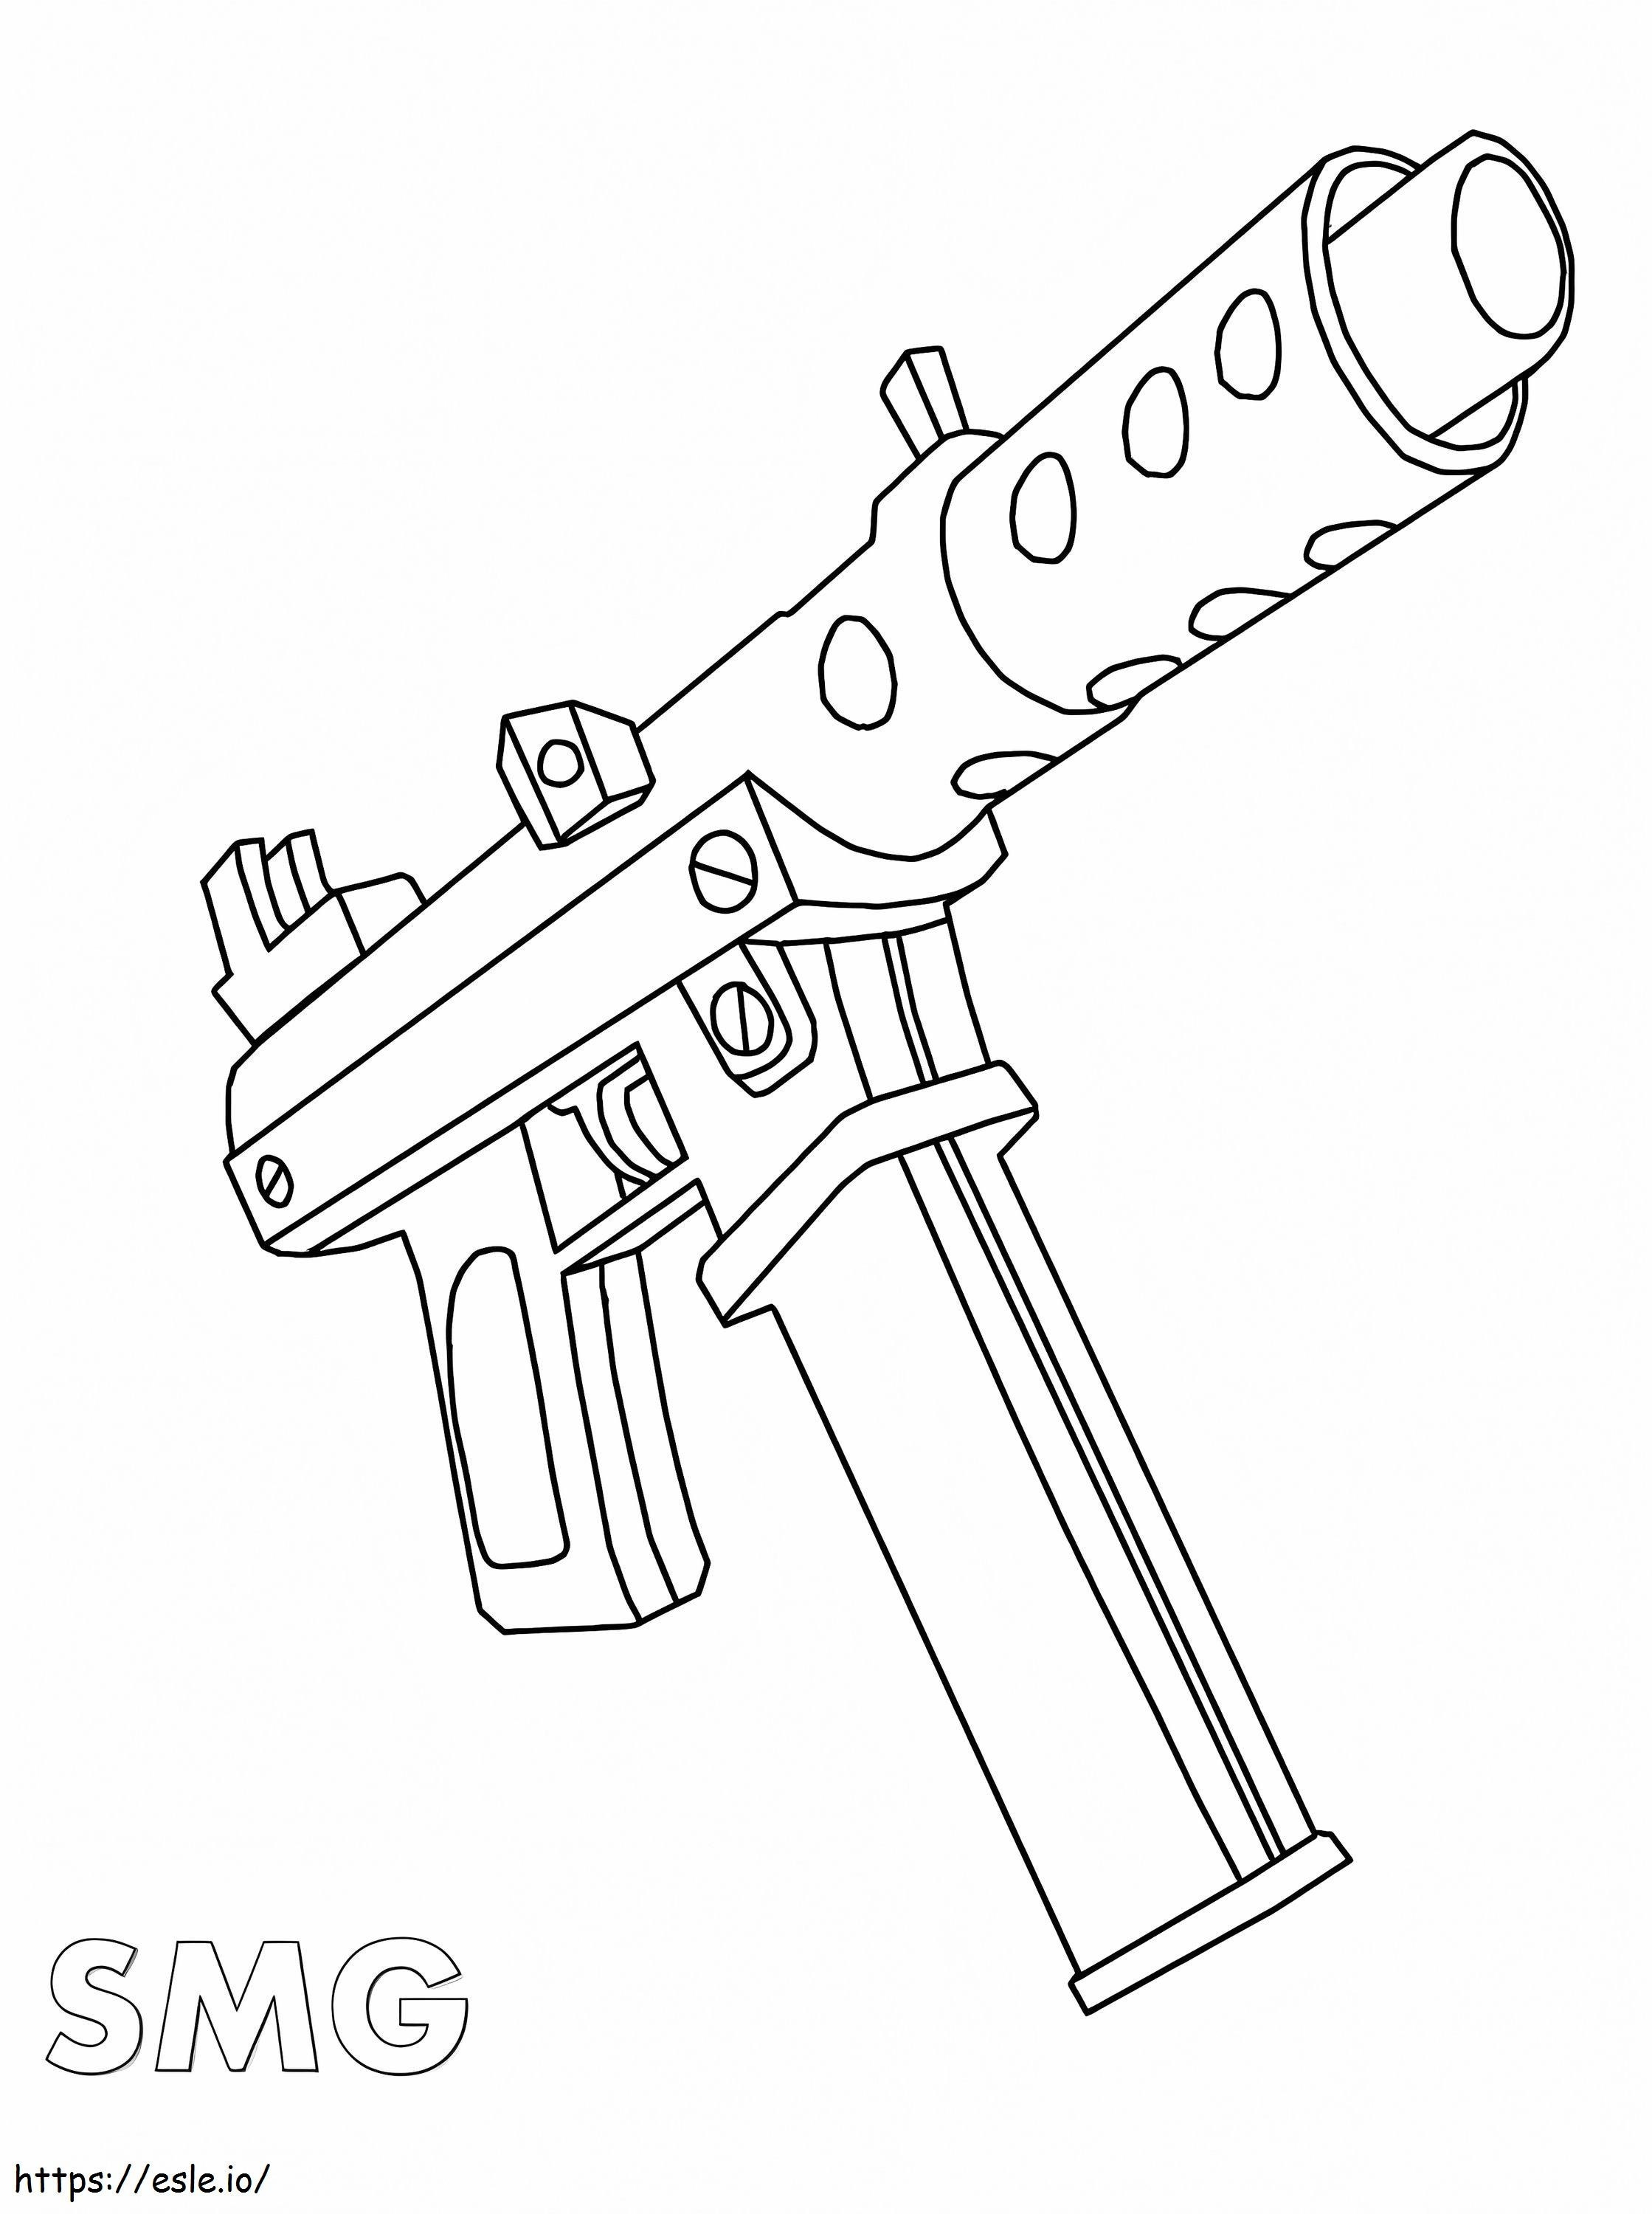 SMG Gun coloring page